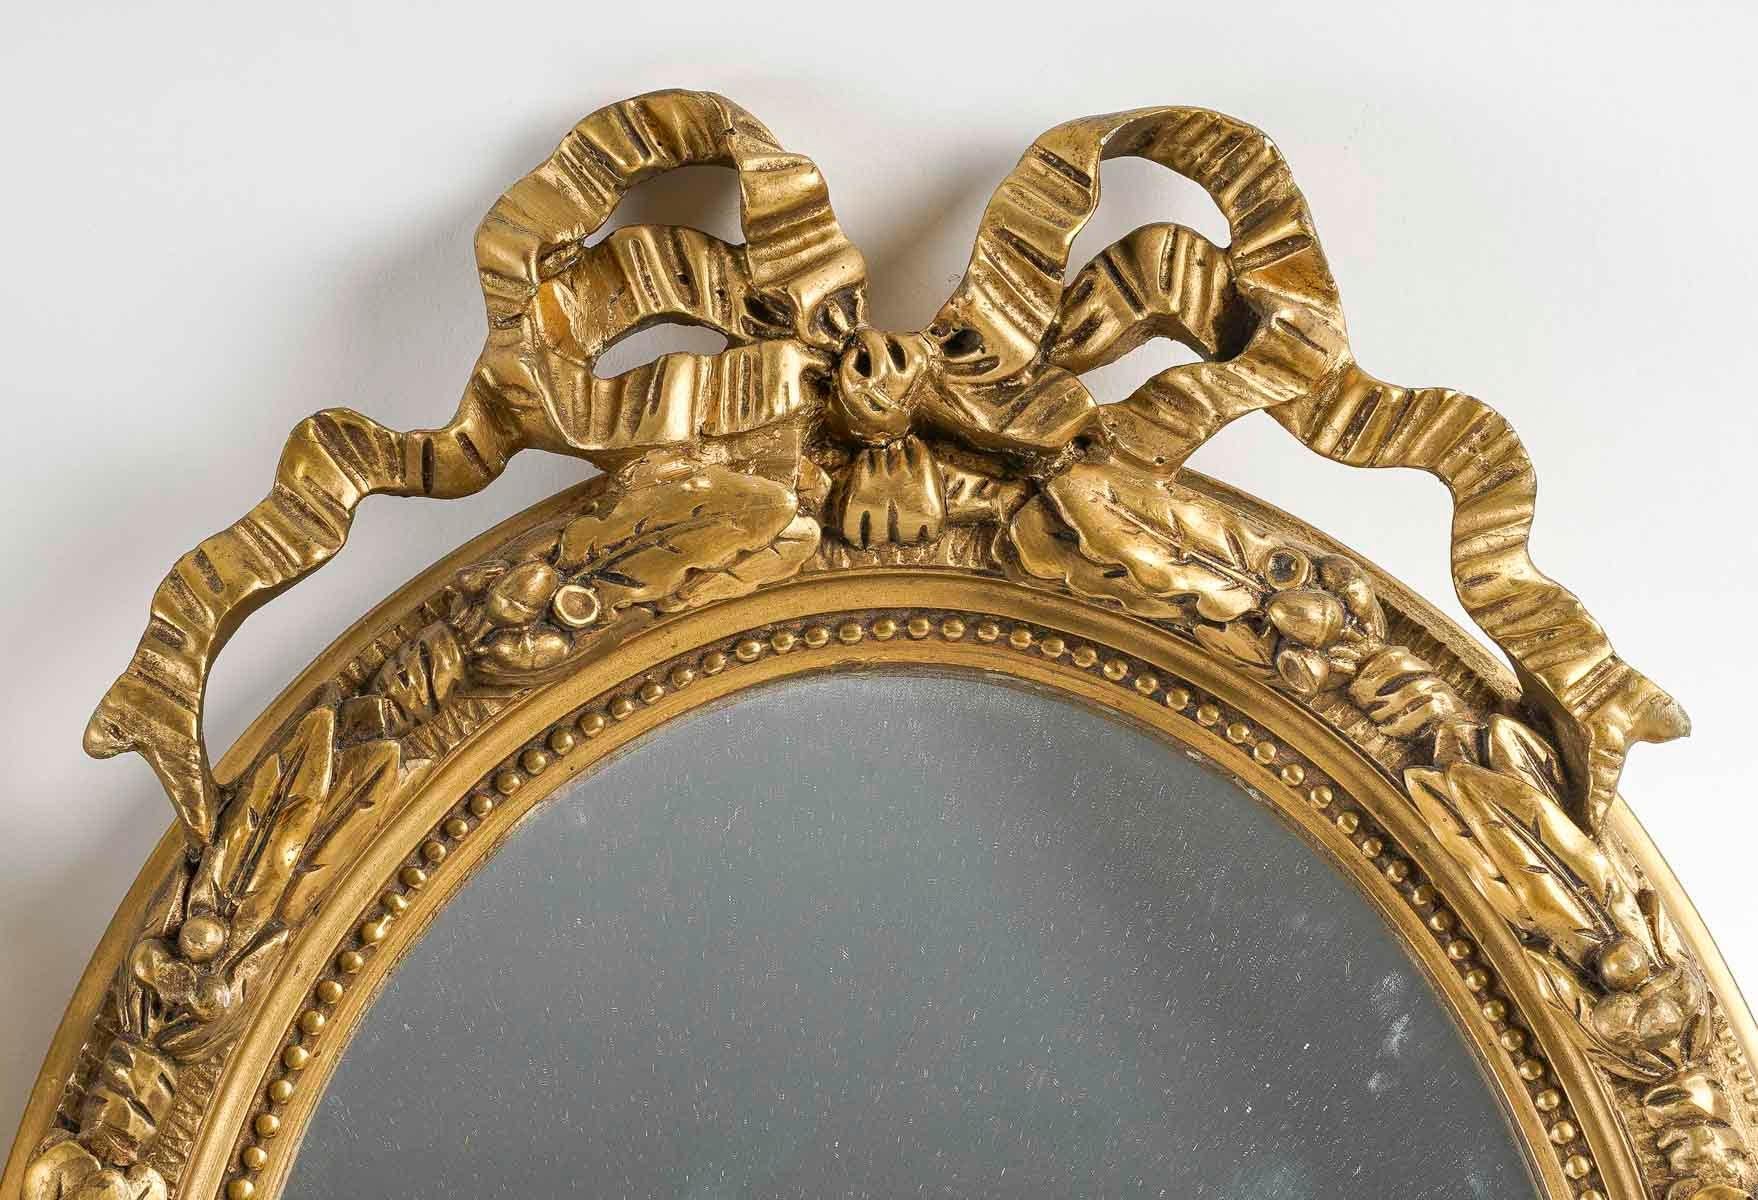 Paire de miroirs de style Louis XVI en bois et stuc doré, début du 20e siècle.

Paire de miroirs en bois et stuc doré, début du 20e siècle, style Louis XVI.
h:55cm, l : 37cm, p : 5,5cm